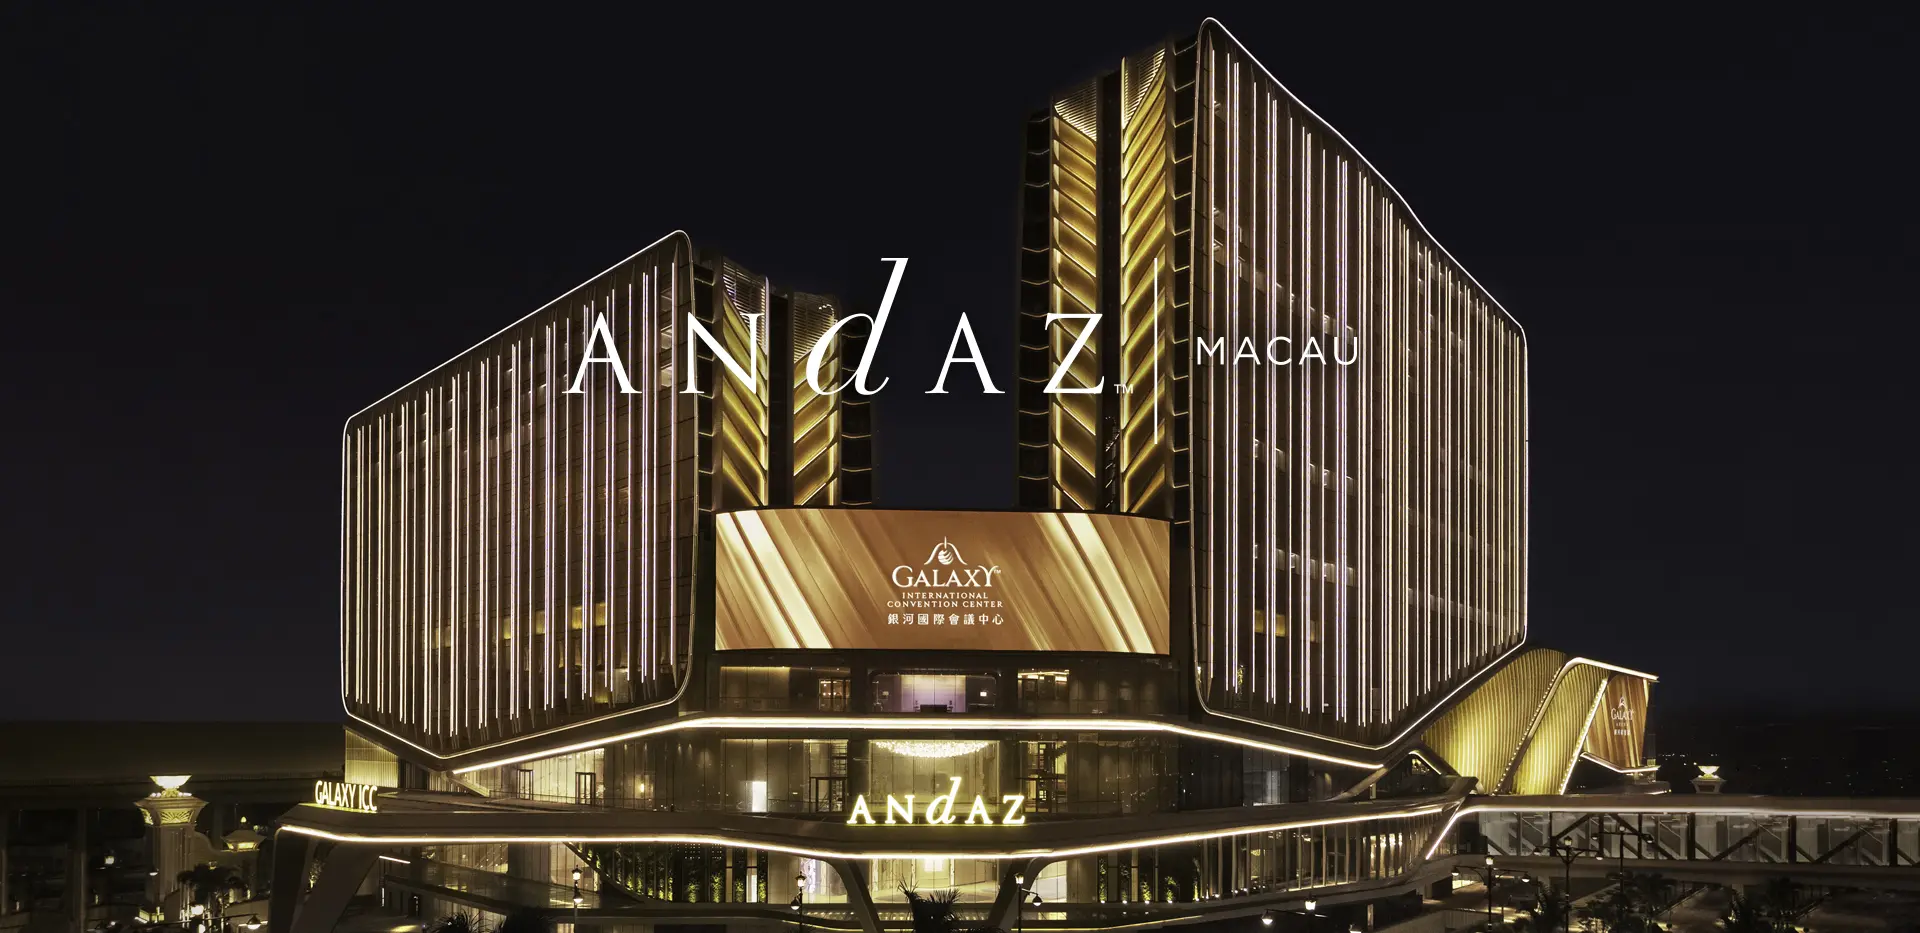 Andaz Hotel